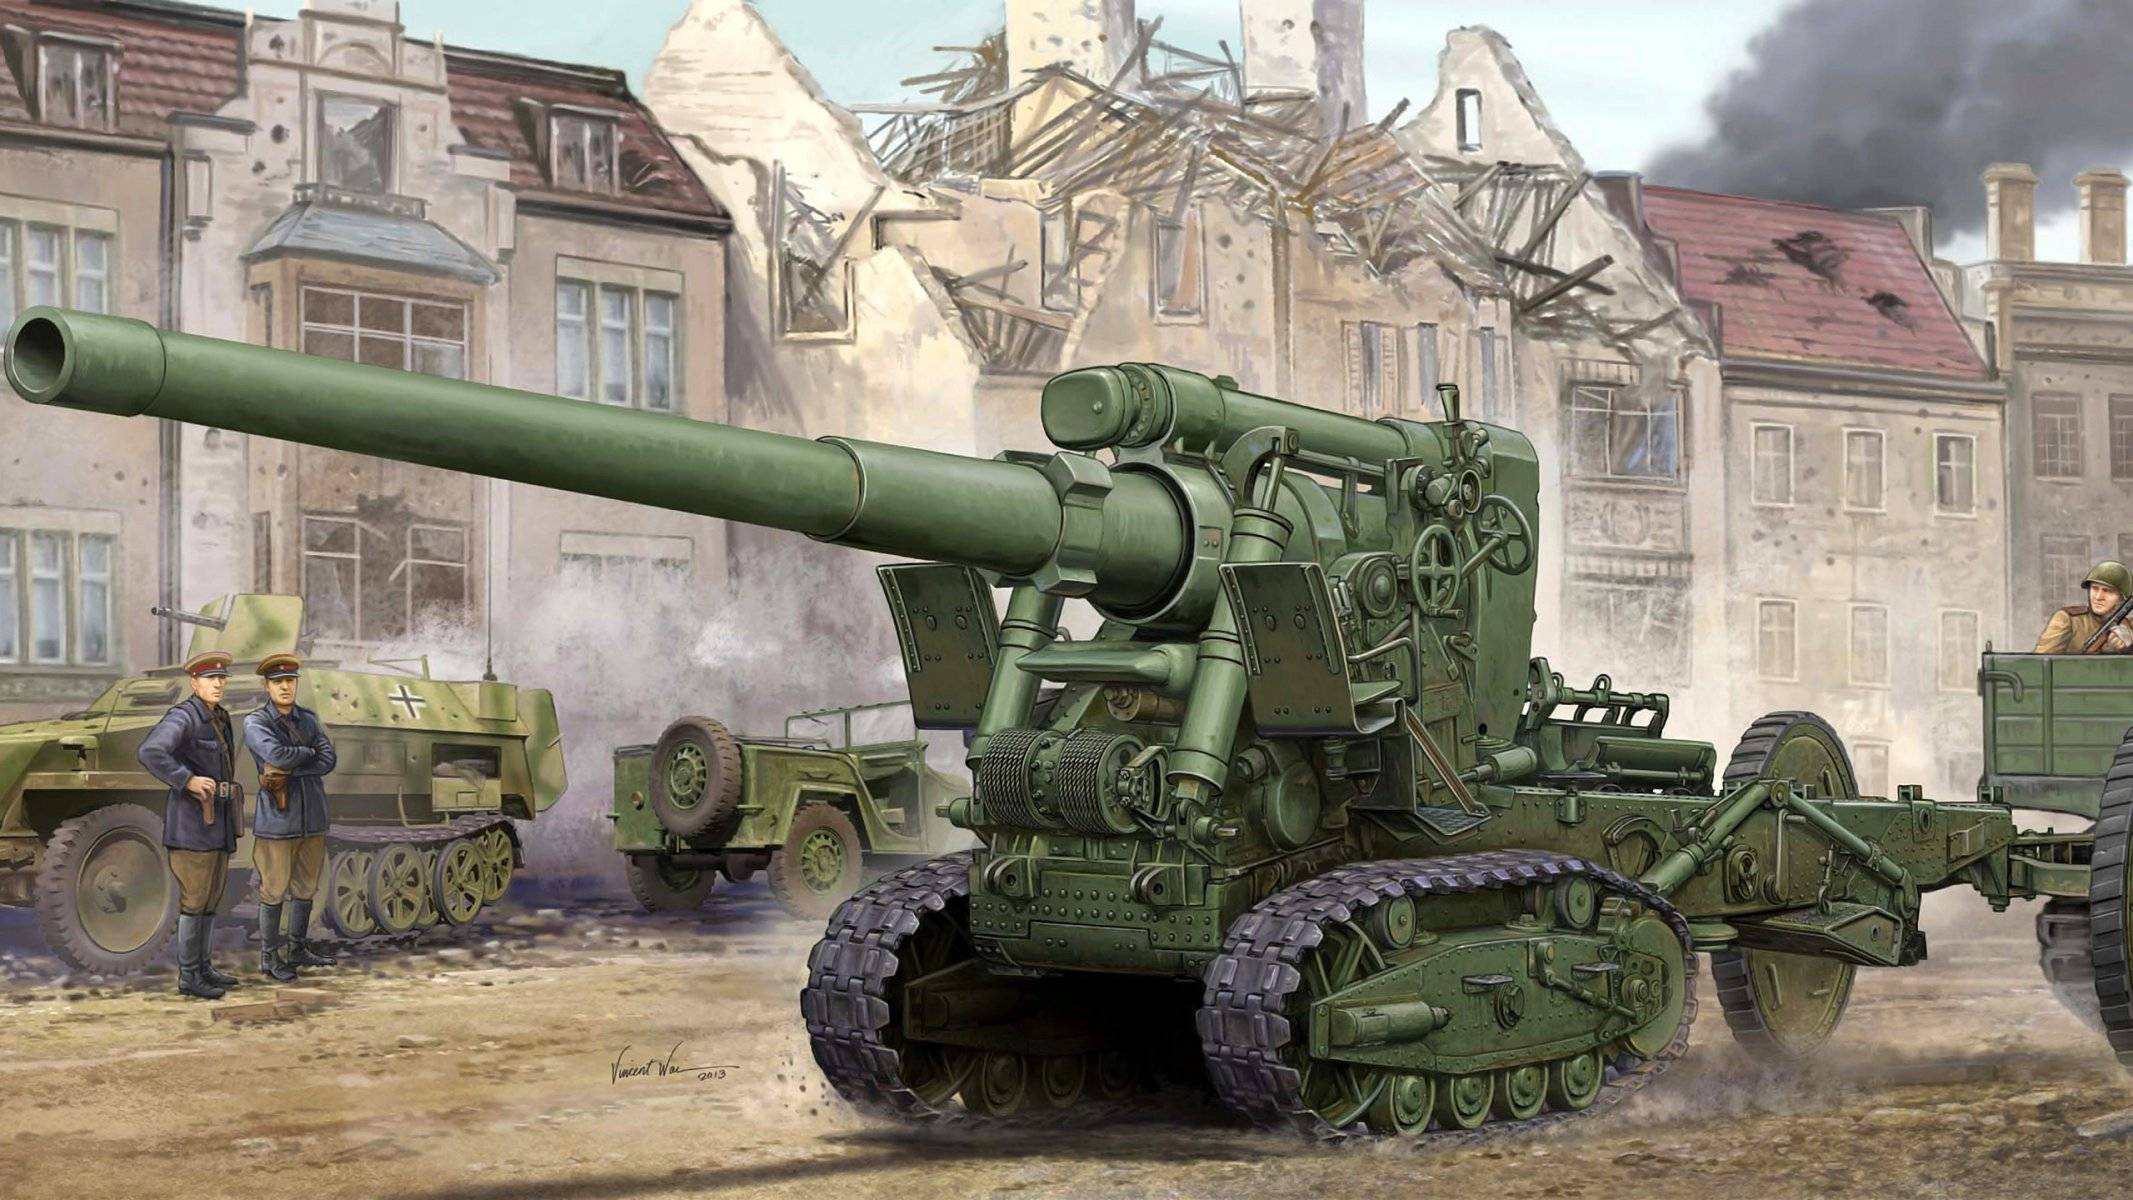 Сау гвоздика 2с1 — 122-мм самоходная артиллерийская установка (гаубица)